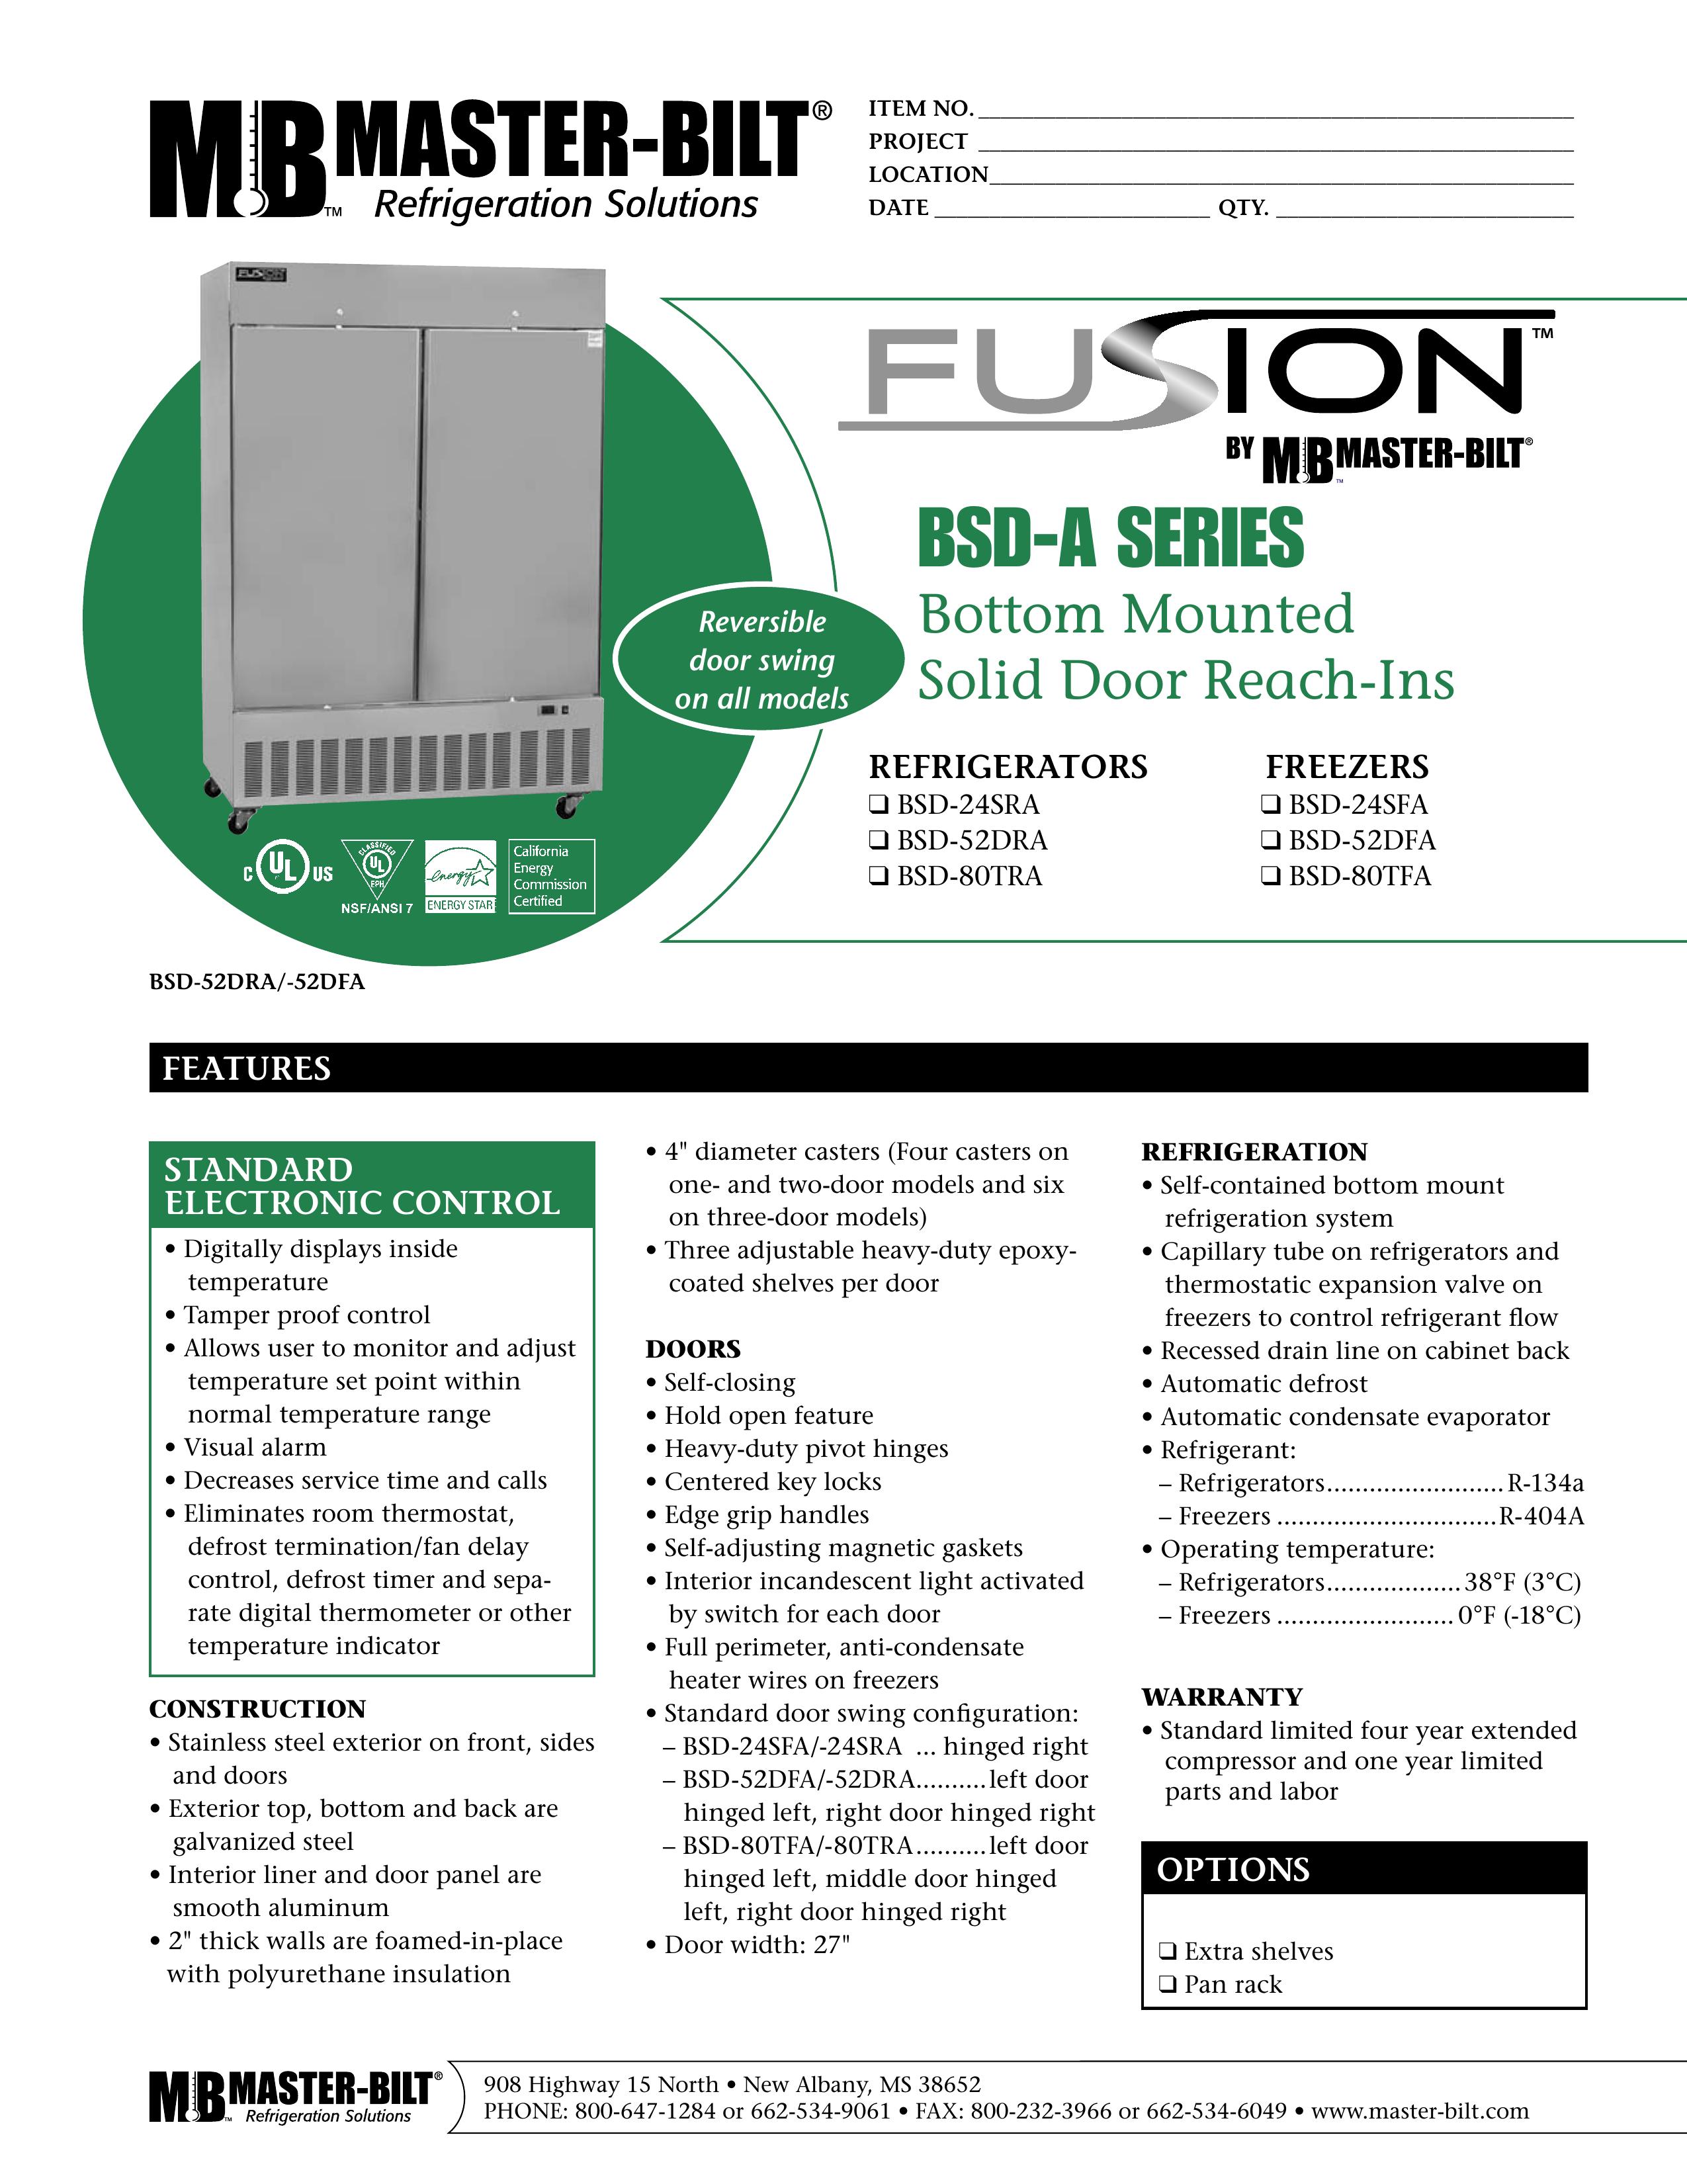 Master Bilt BSD-52DFA Refrigerator User Manual